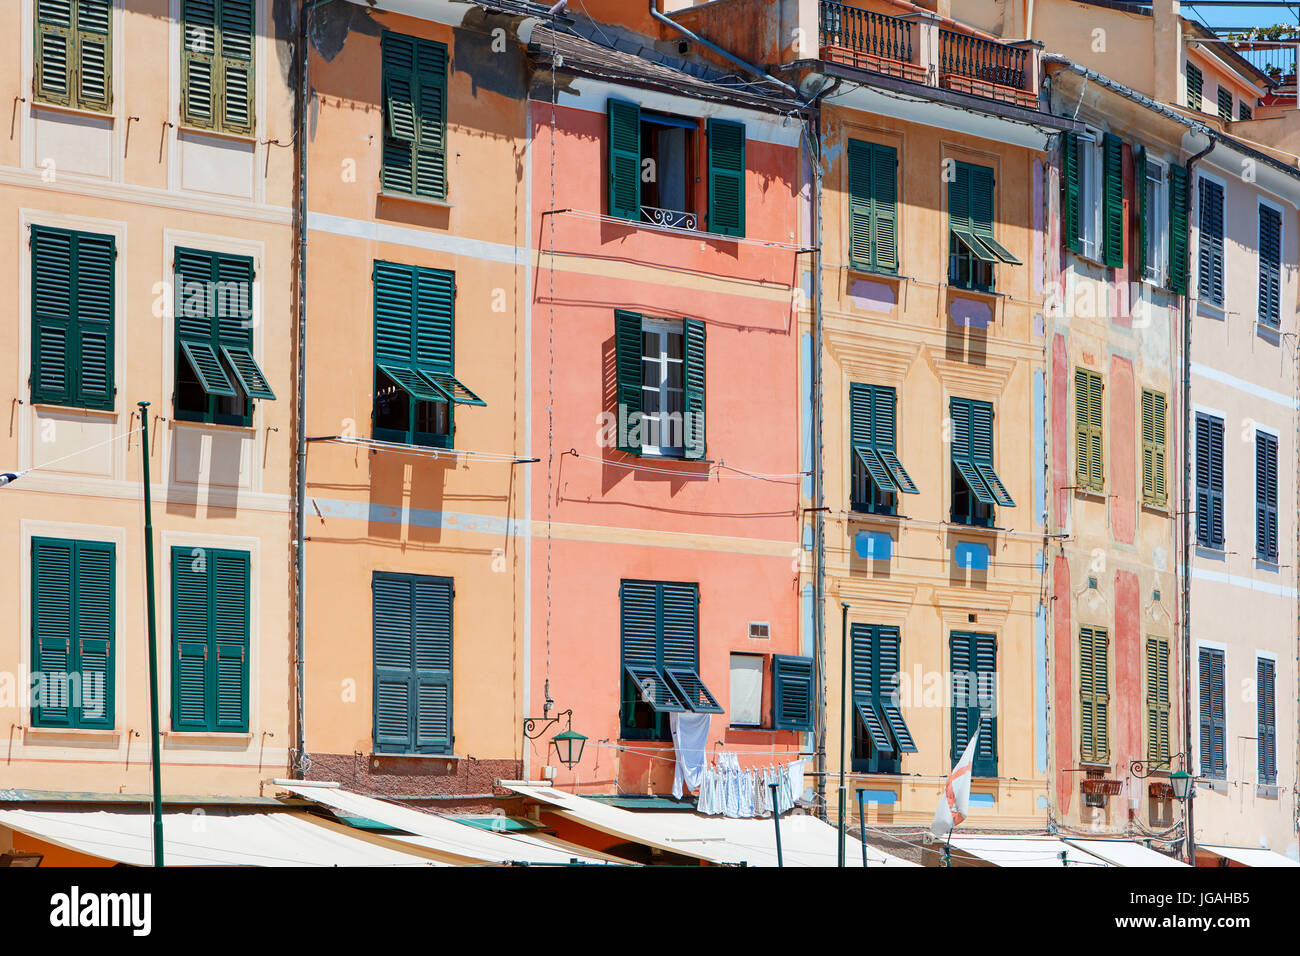 Beau village typique de Portofino avec façades maisons colorées en Italie, sur la côte de la mer de Ligurie Banque D'Images